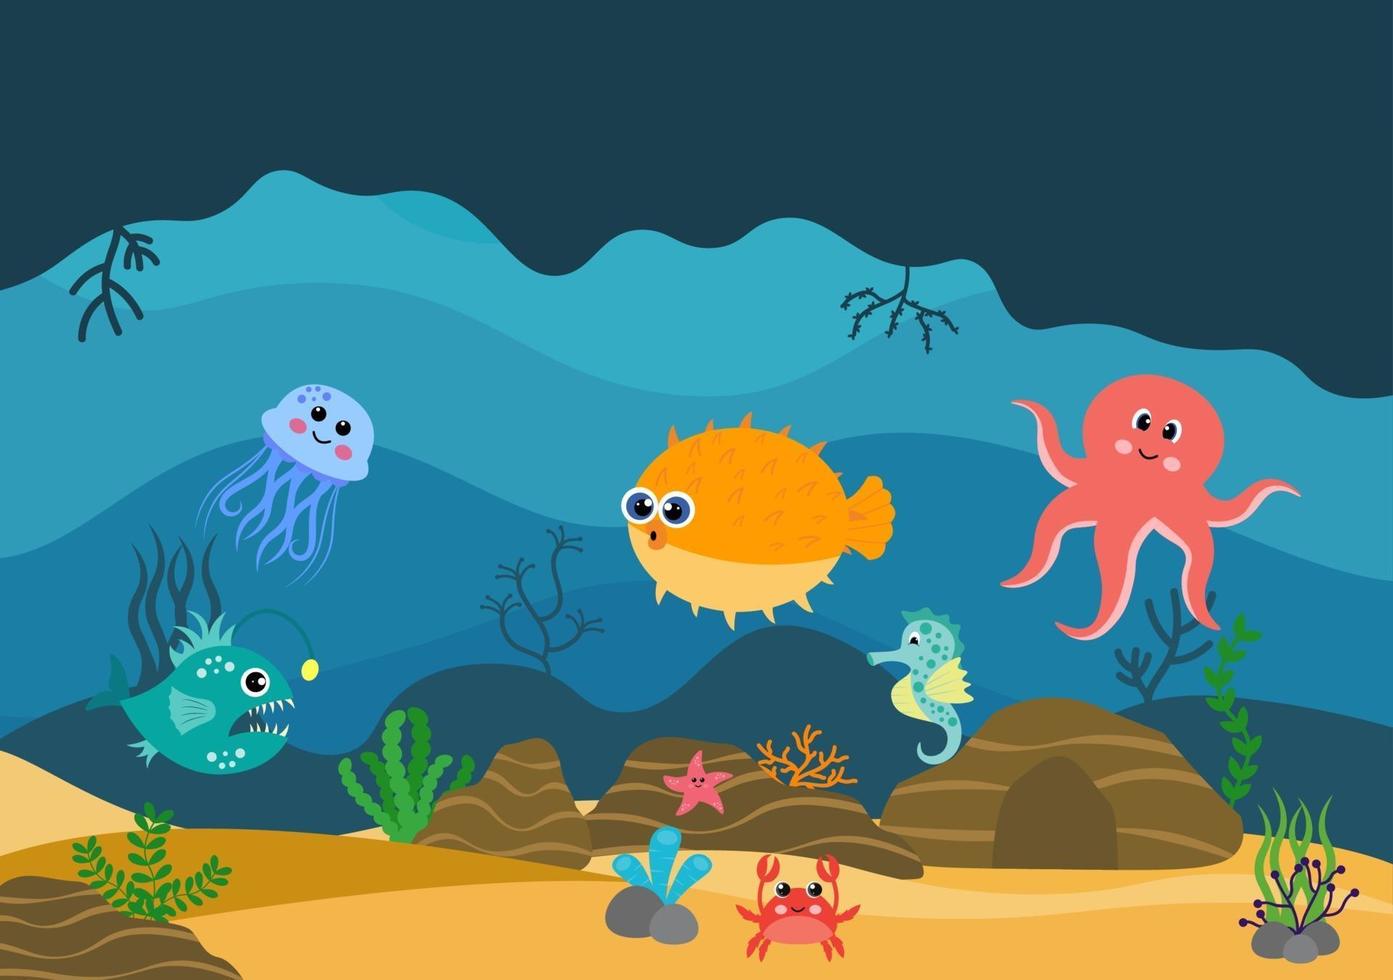 undervattenslandskap och söta djurliv i havet med sjöhästar, sjöstjärnor, bläckfisk, sköldpaddor, hajar, fisk, maneter, krabbor. vektor illustration